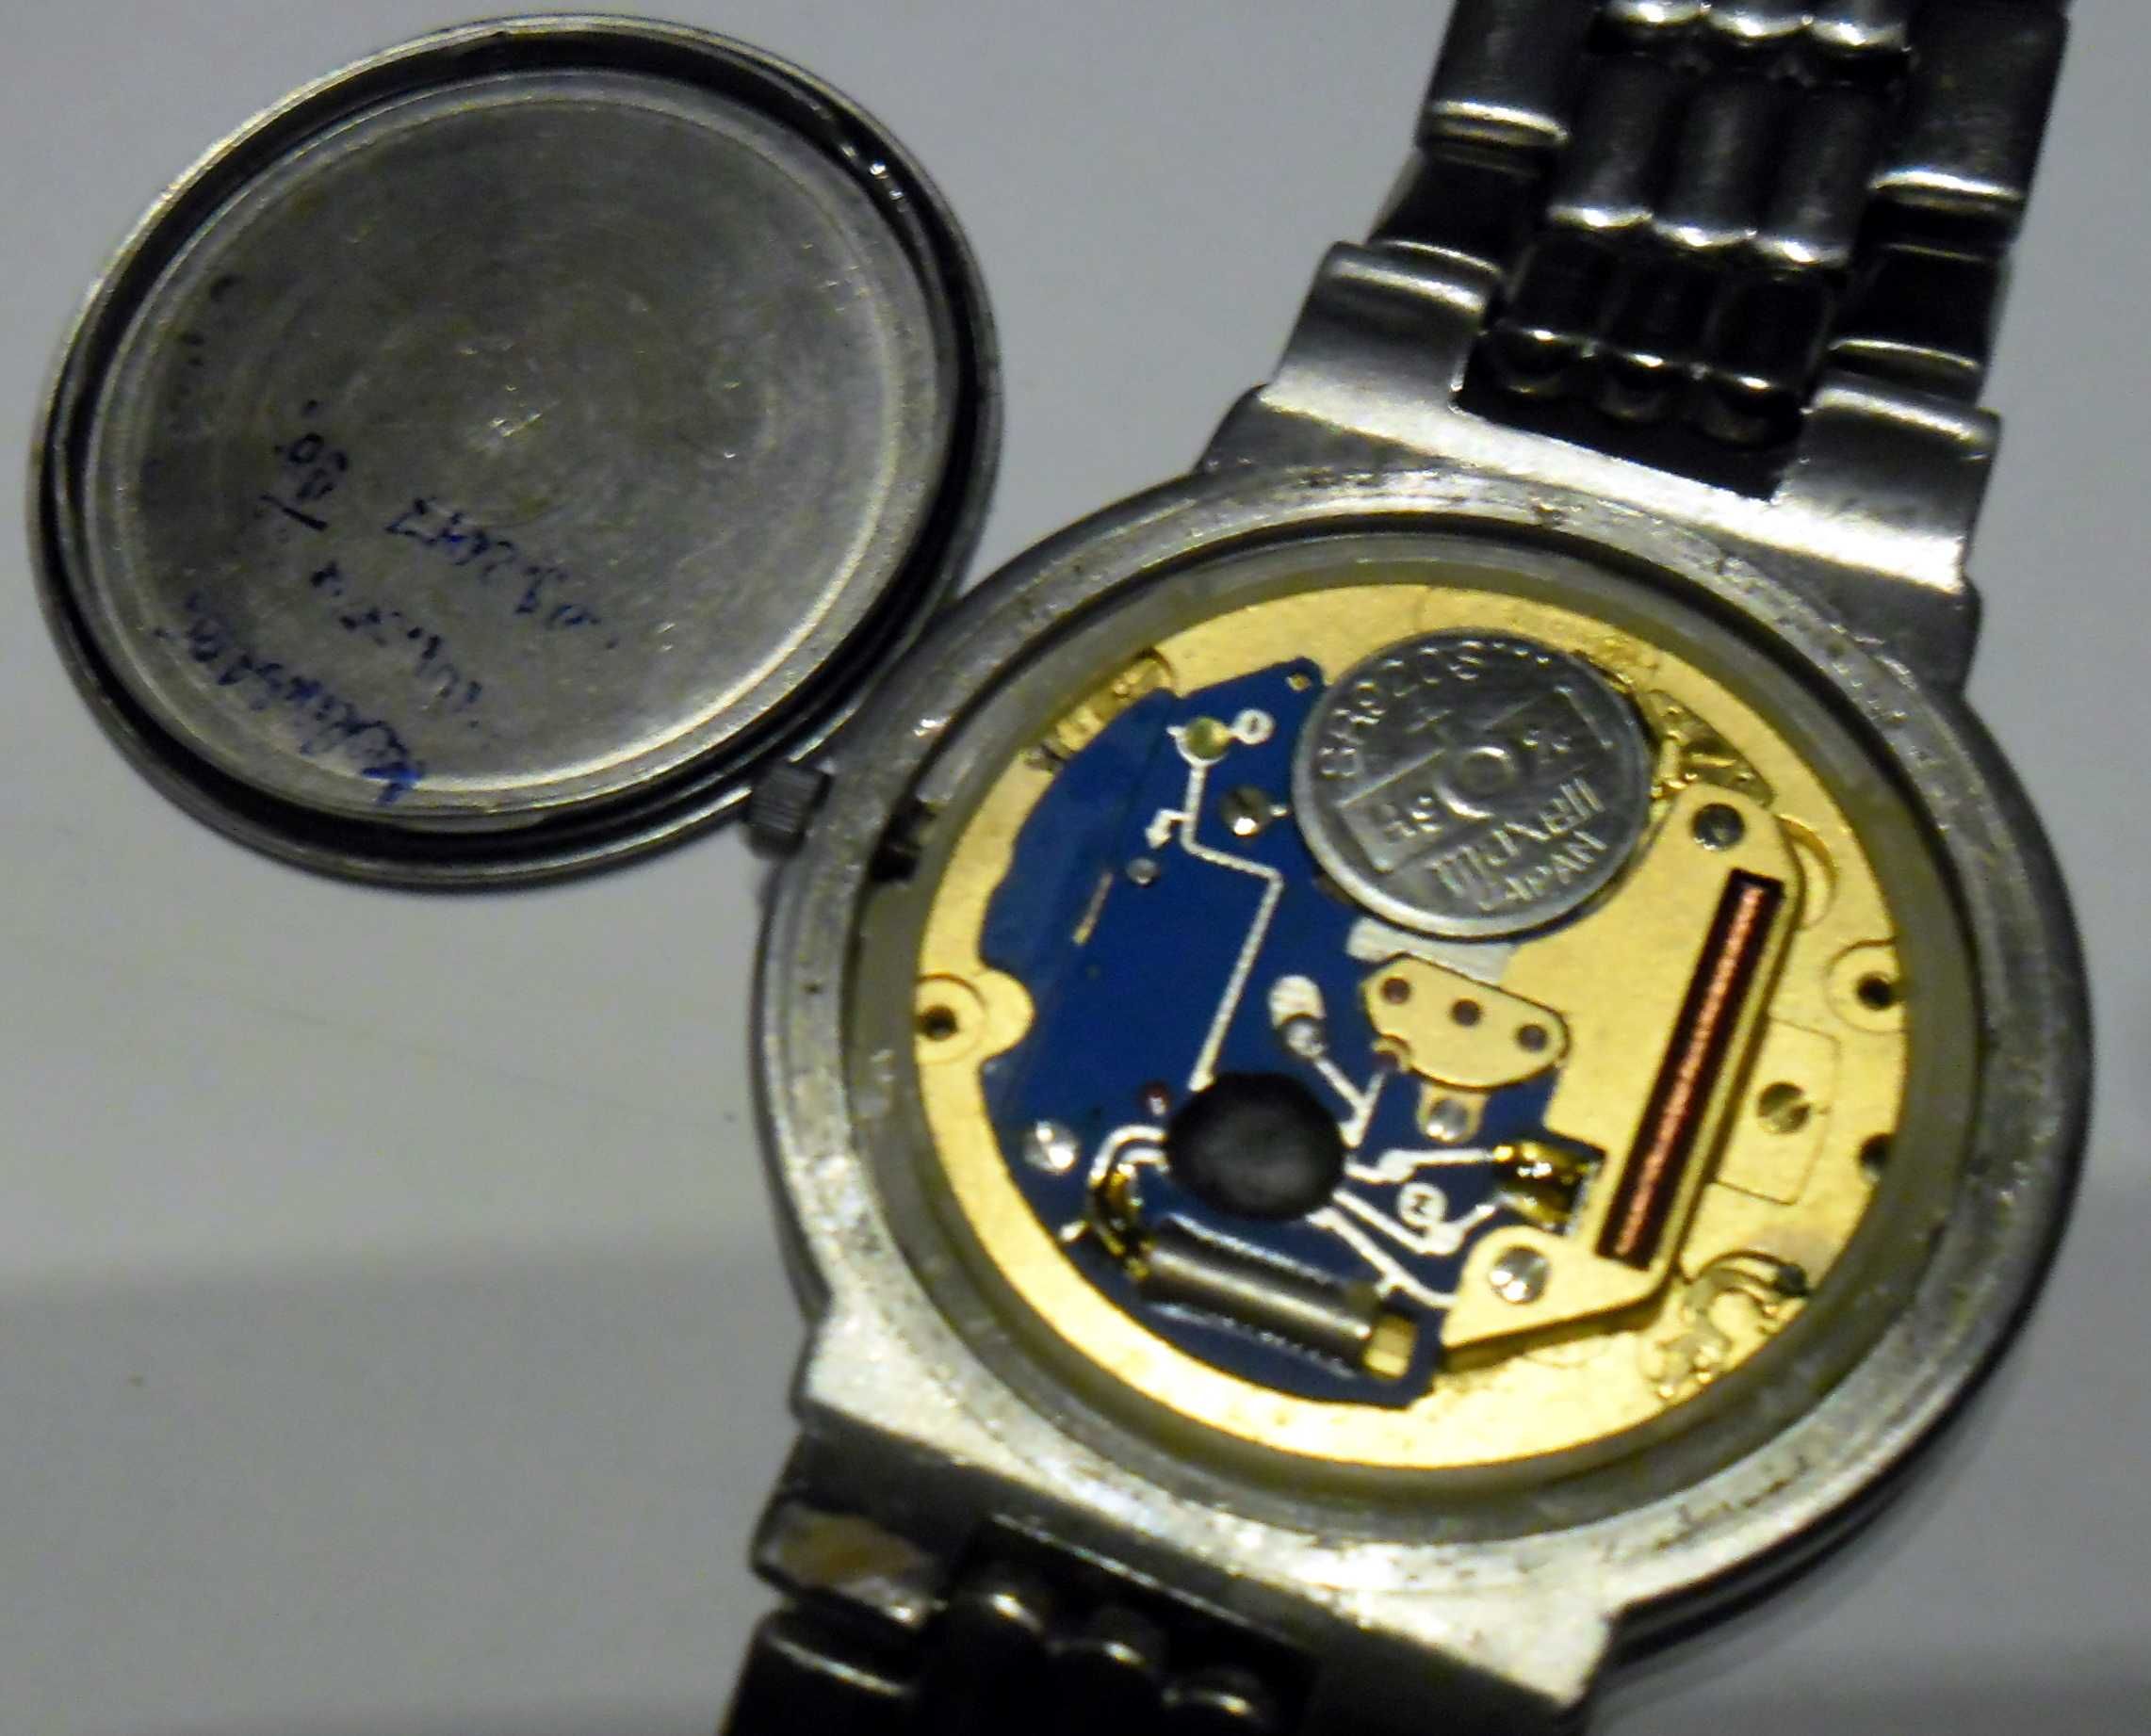 zegarek Candino szwajcarski  z szafirowym szkiełkiem